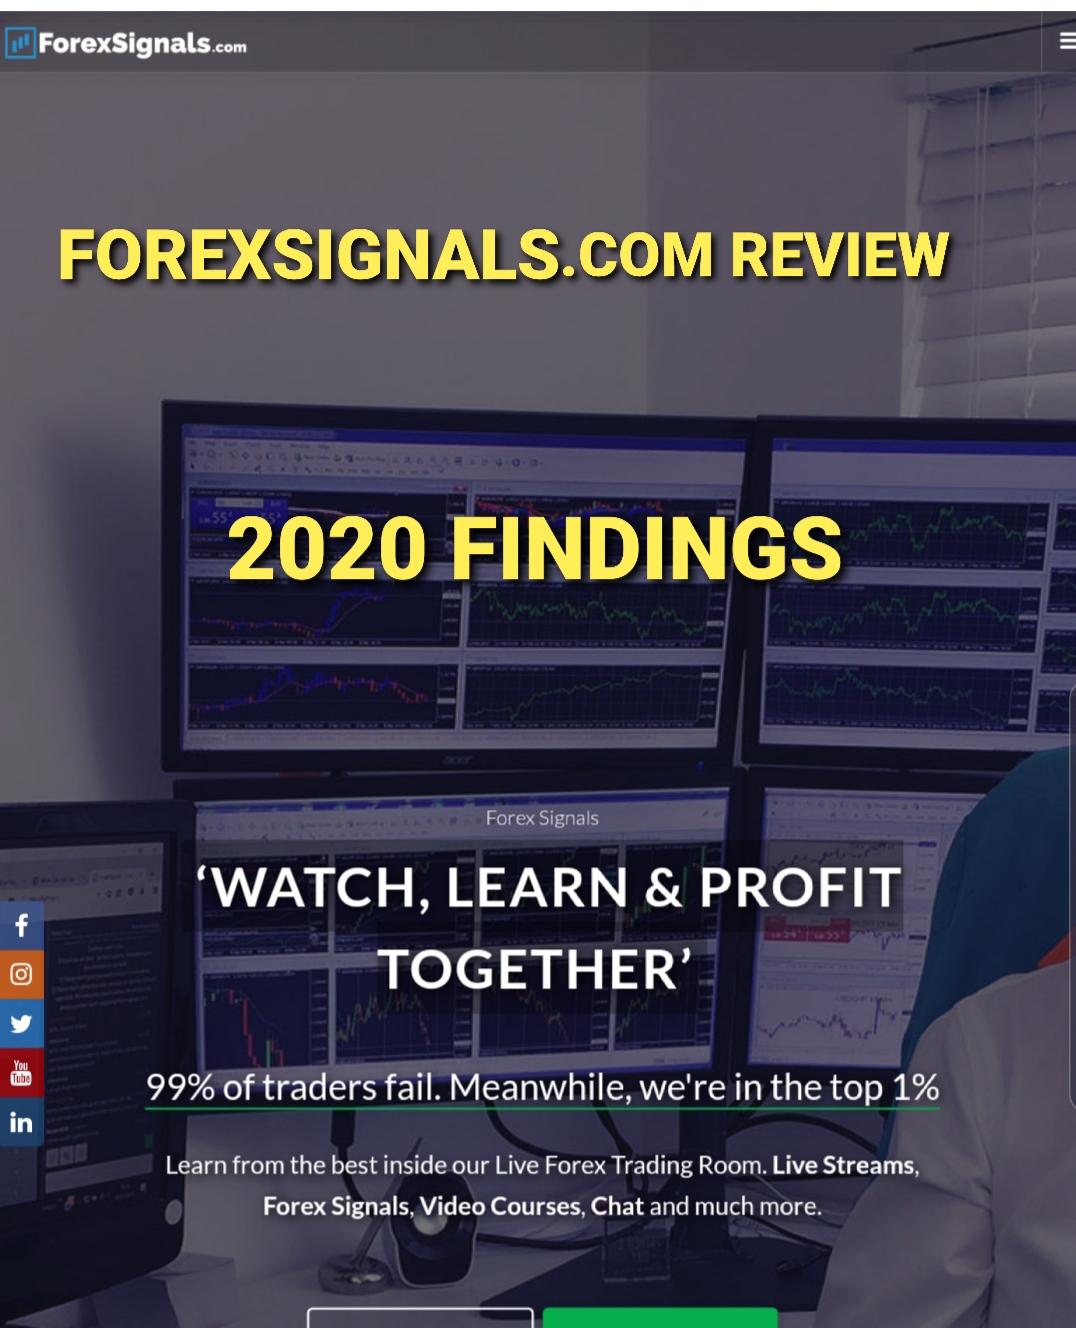 Forexsignals.com review